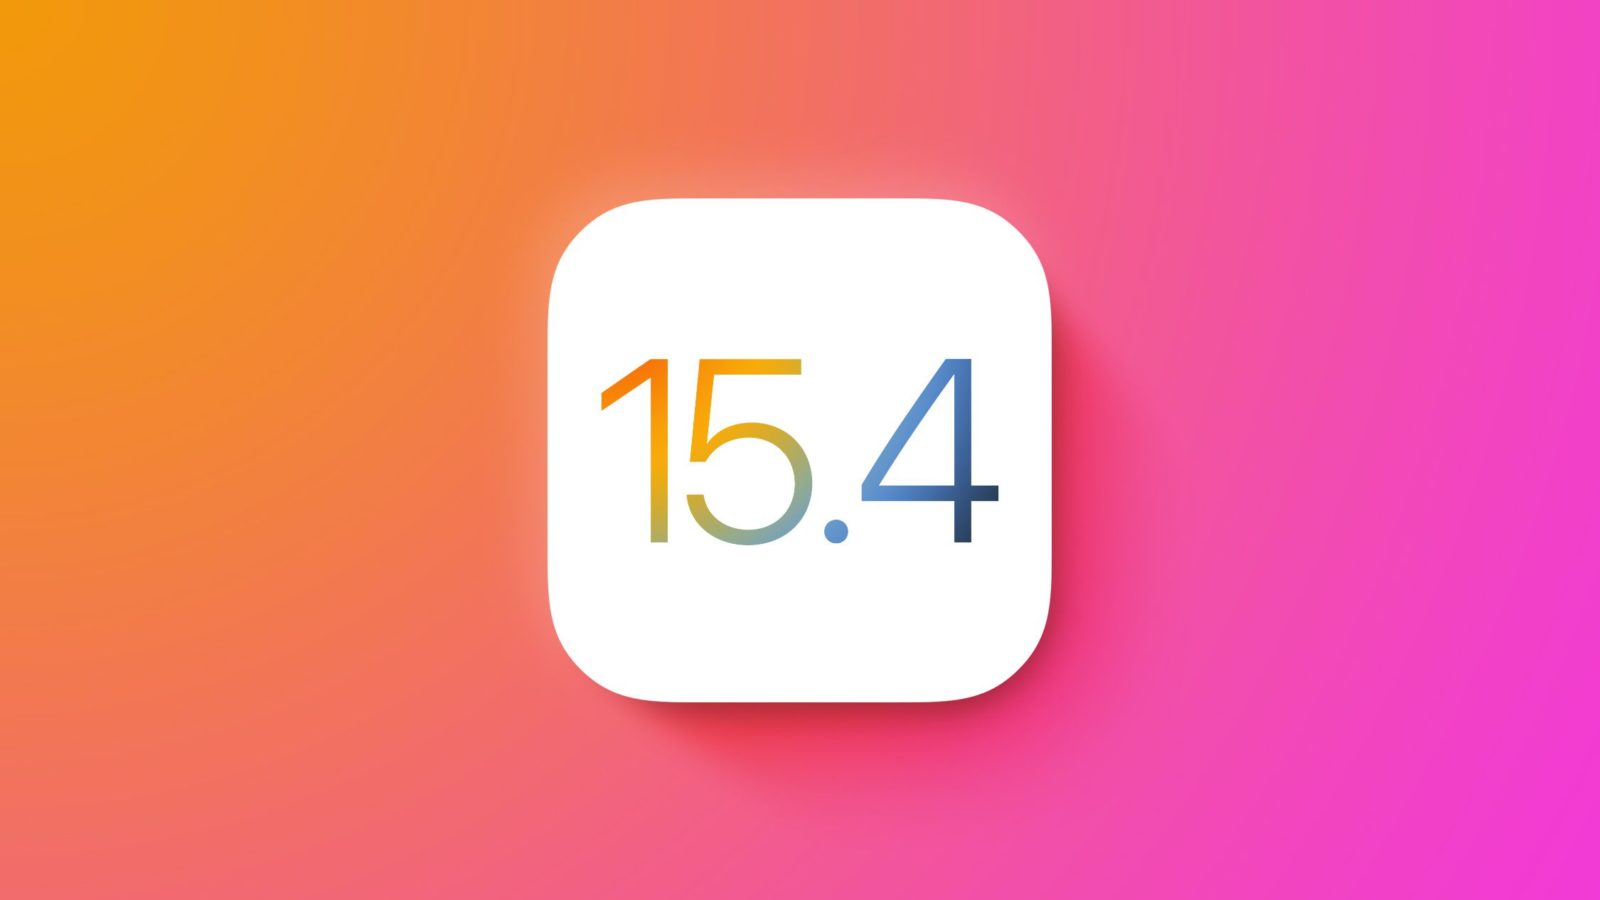 نظام تشغيل الآيفون - iOS 15.4